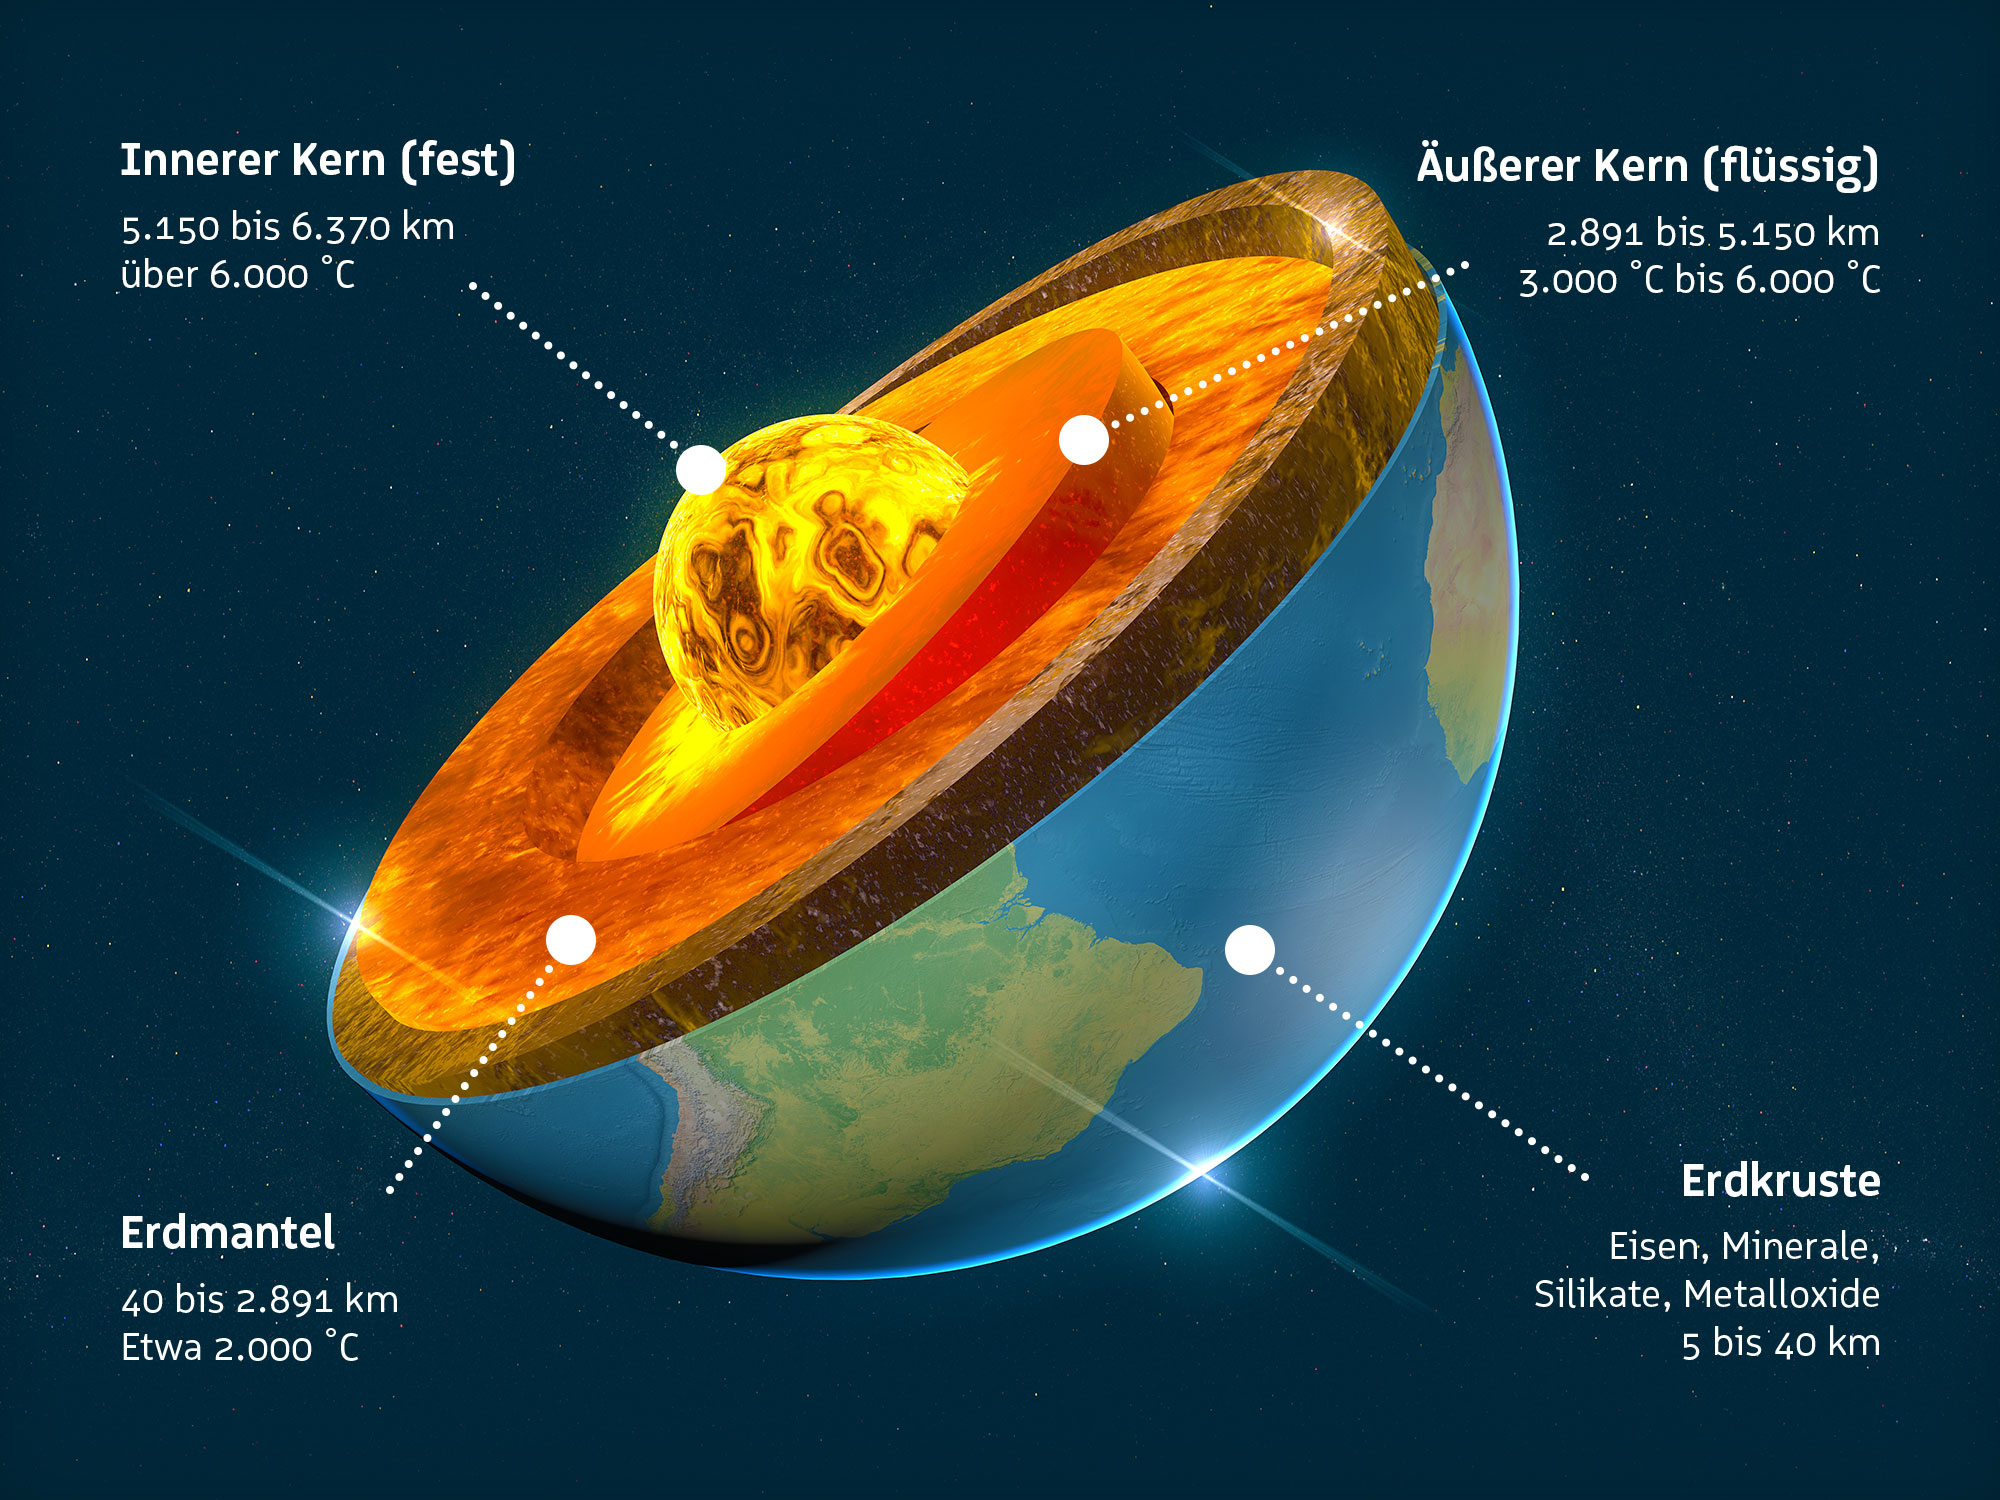 Schaubild der verschiedenen Schichten der Erde, bestehend aus der Erdkruste, dem Erdmantel, dem äußeren Kern (flüssig) und dem inneren Kern (fest)